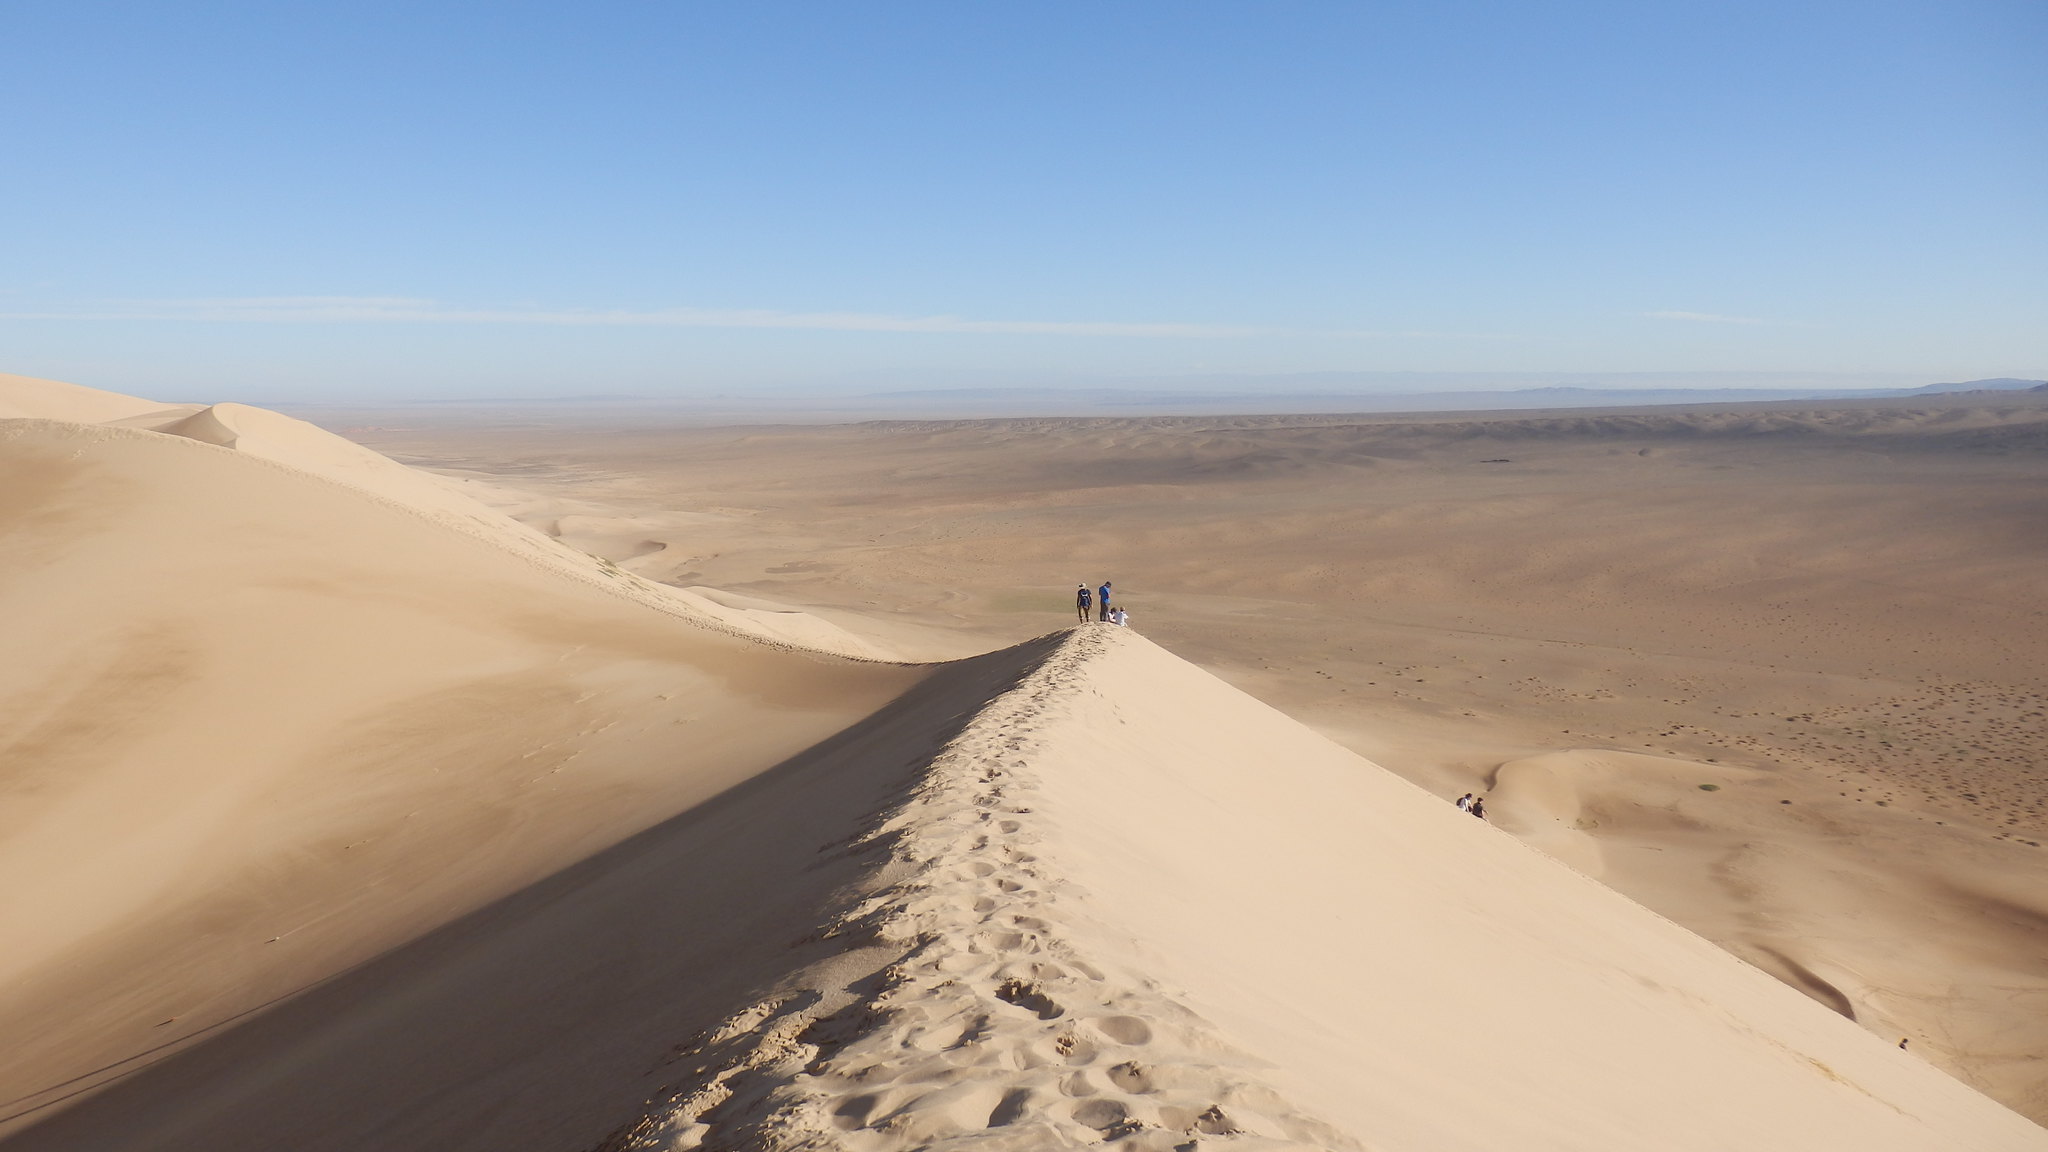 The Sand Dunes in the Gobi Desert, Mongolia